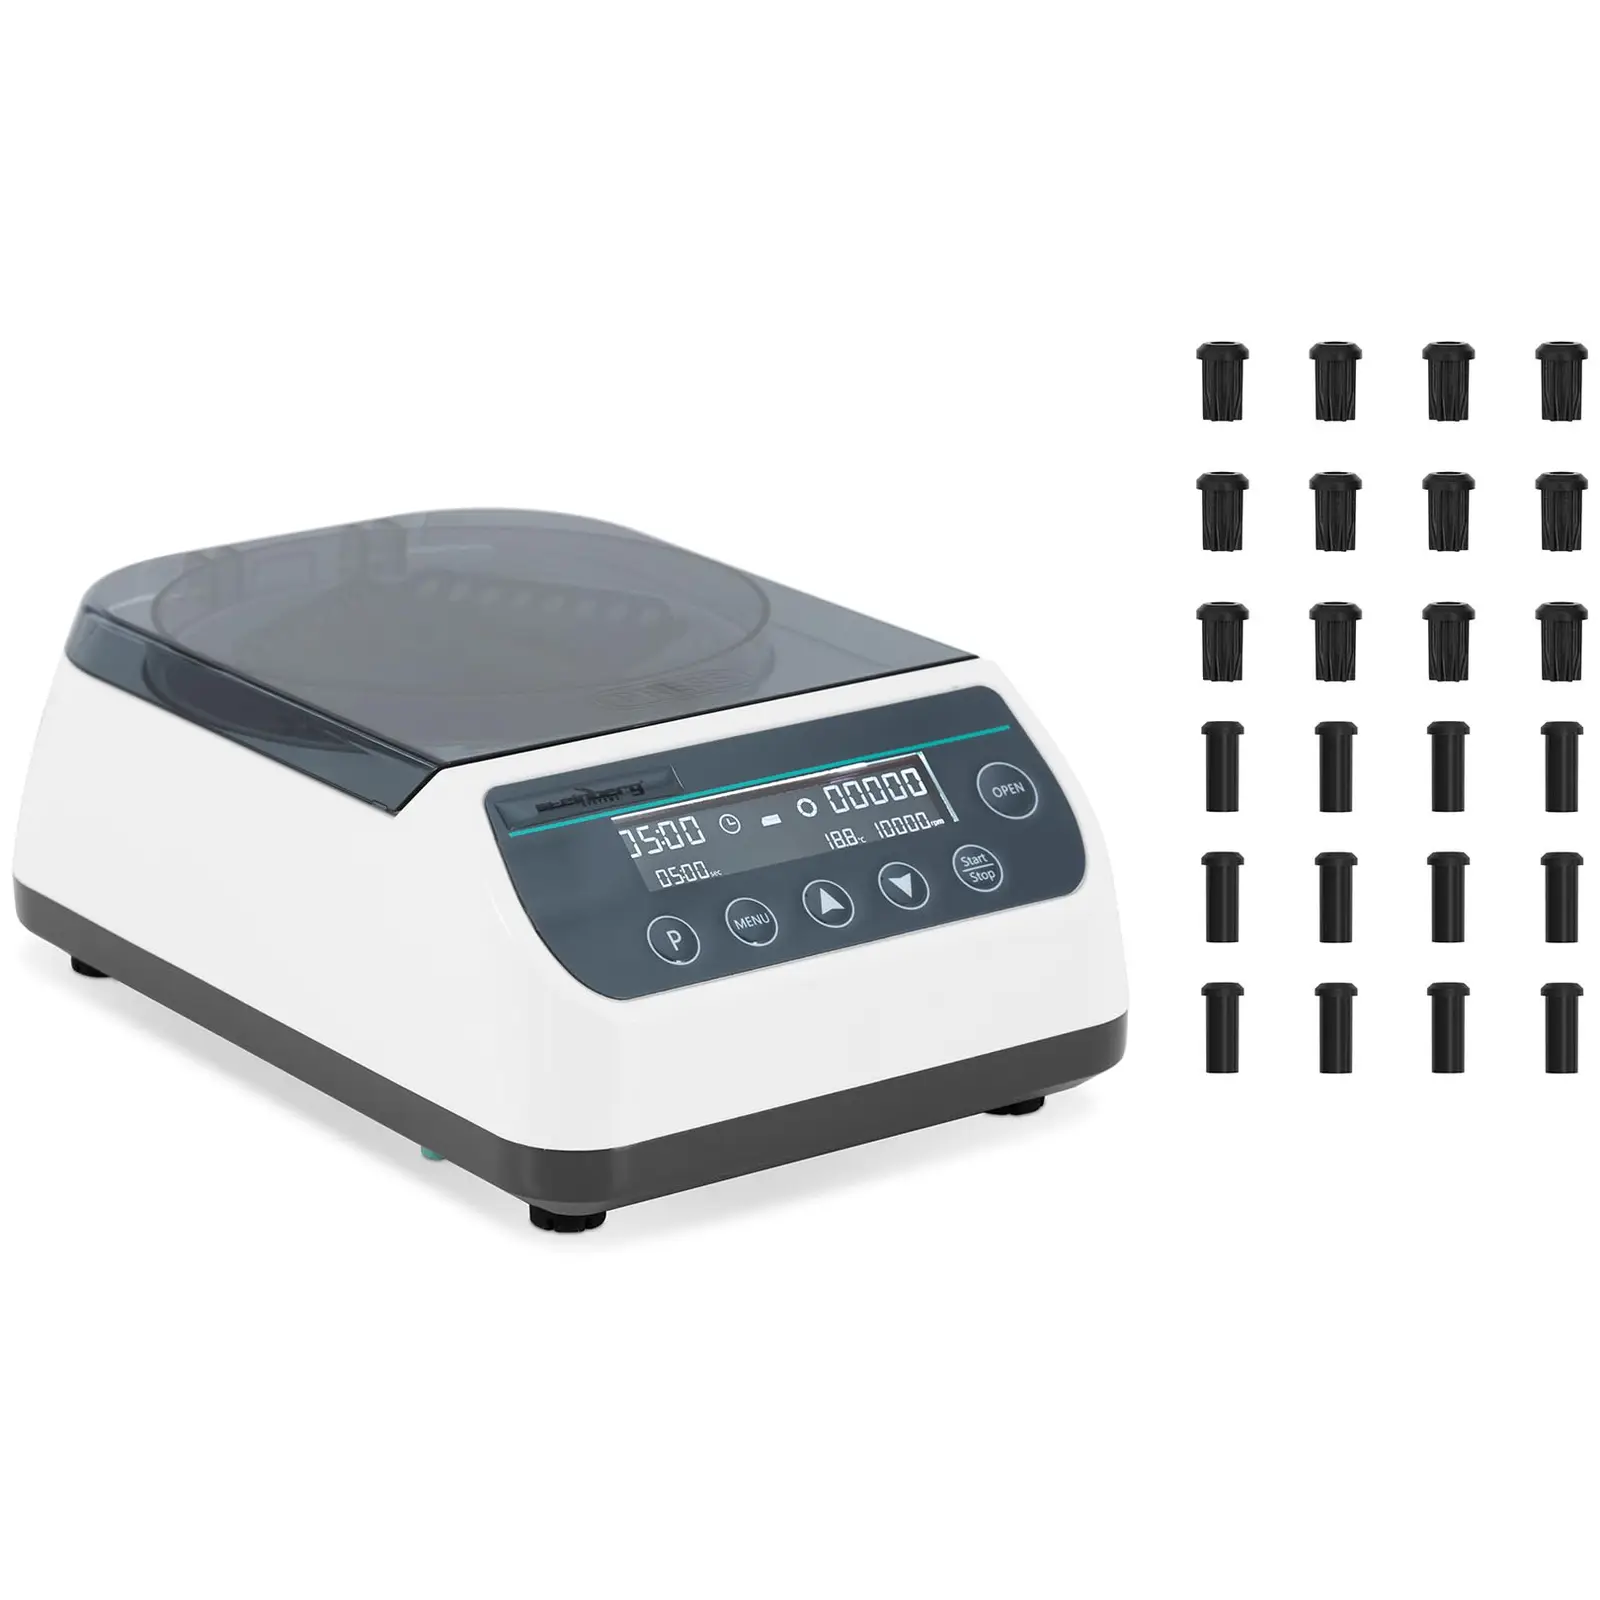 Centrifuga da banco - Alta velocità - Rotor 2 in 1 - 10 000 giri/min - Per 12 provette, 4 strisce PCR - RZB 6708 xg